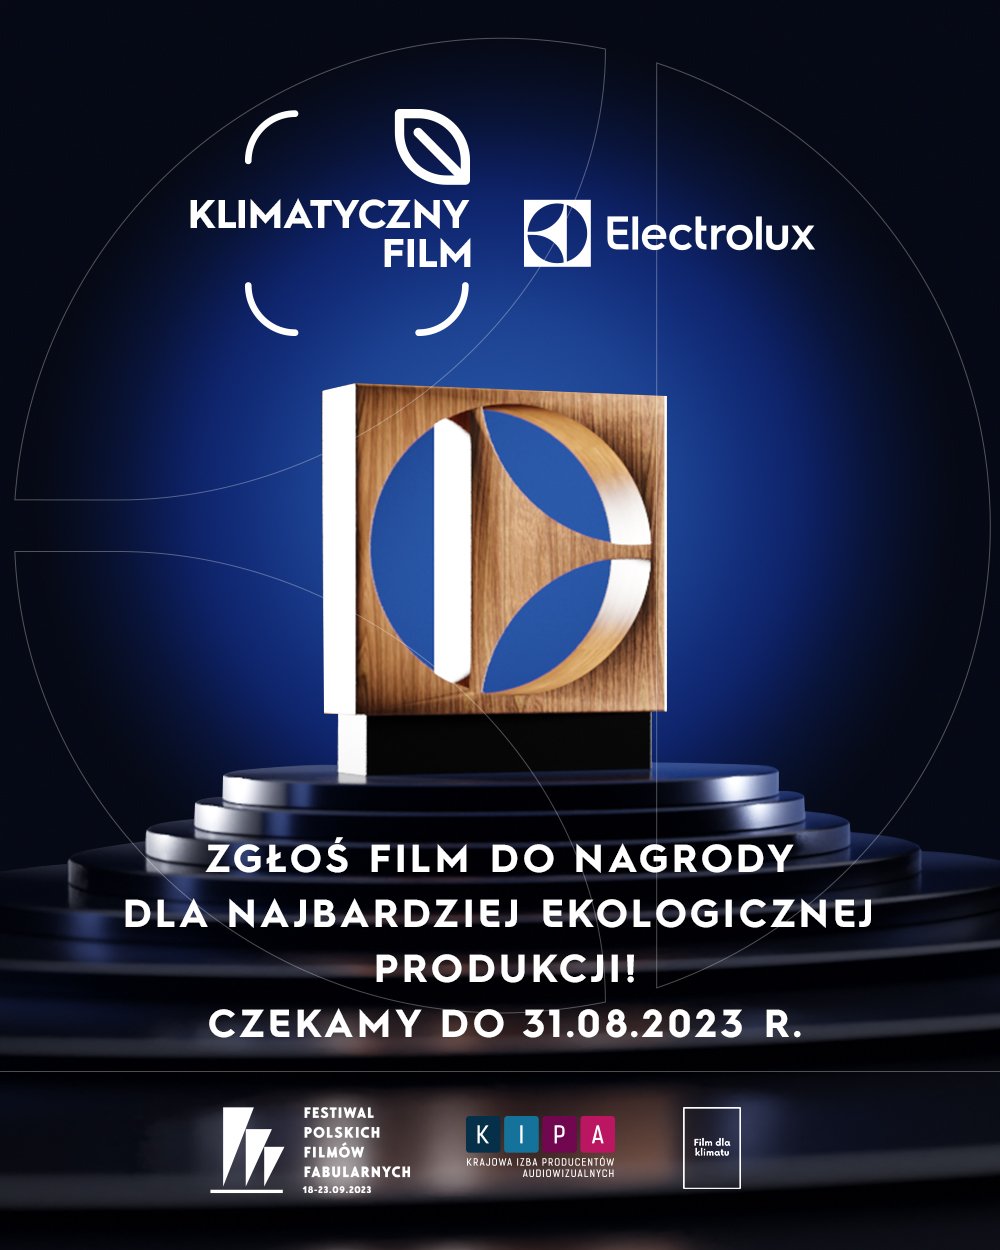 Plakat: „Klimatyczny Film” Electrolux. Zgłoś film do nagrody dla najbardziej ekologicznej produkcji. Czekamy do 31.08.2023 r.